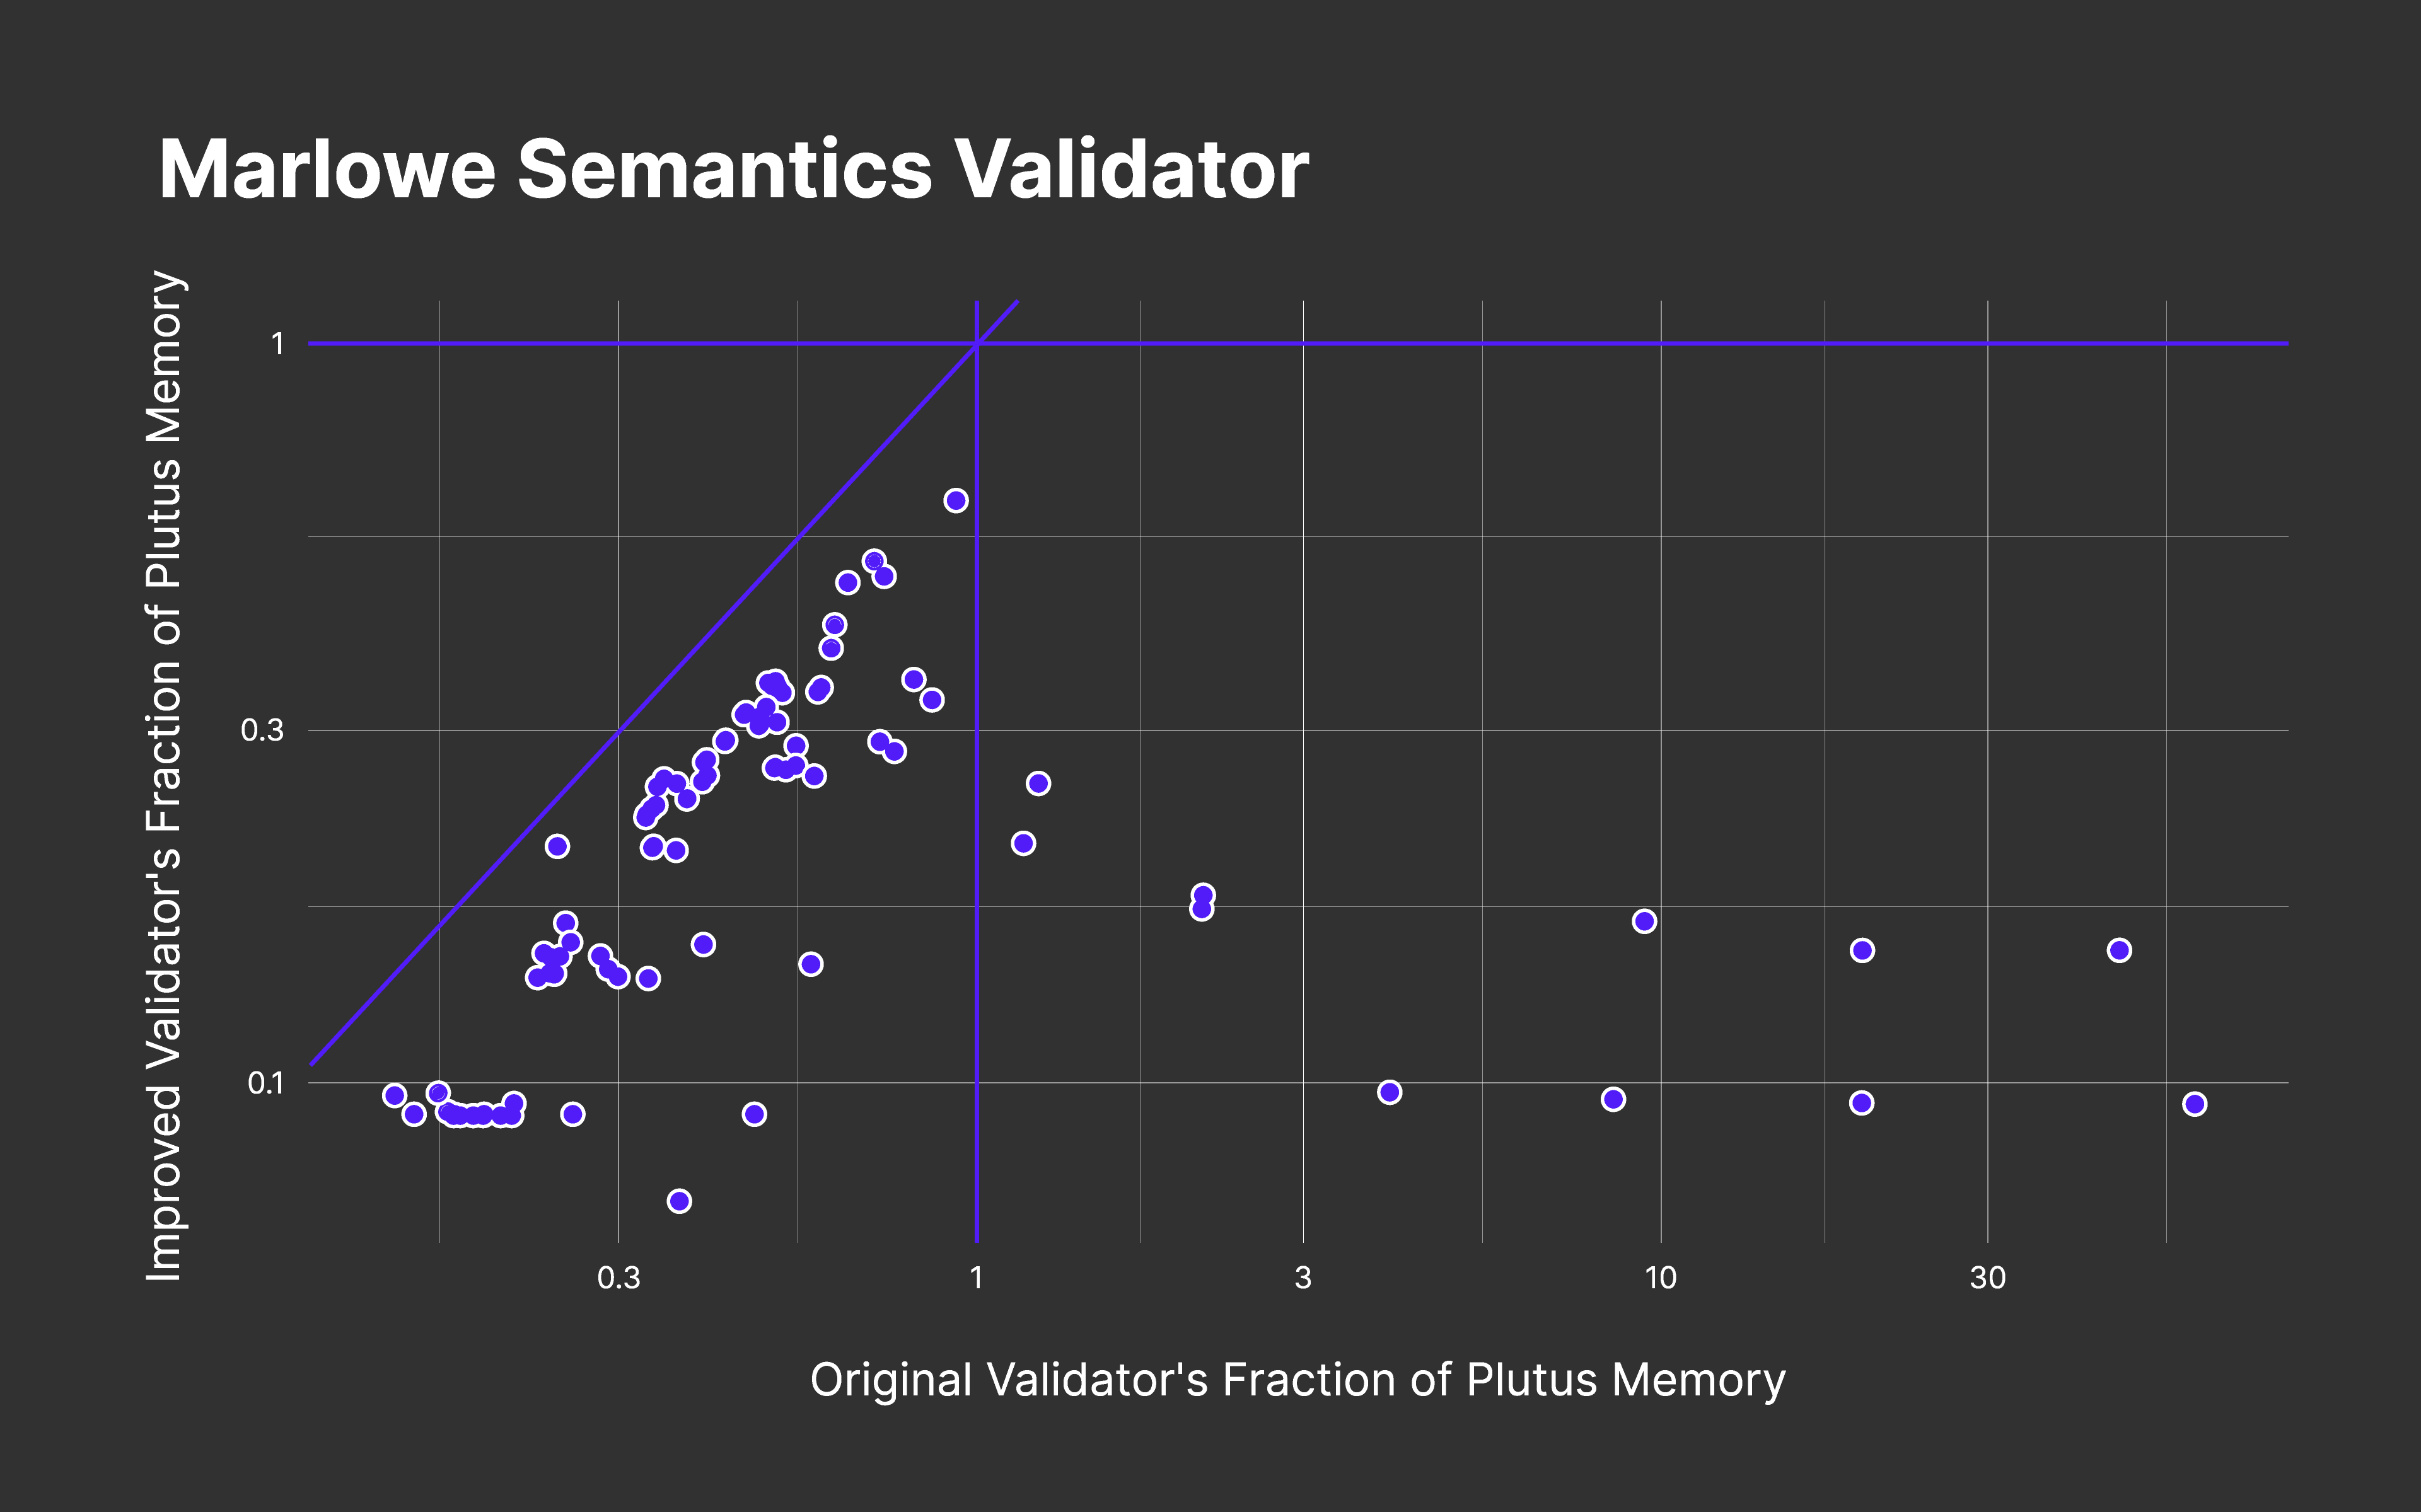 original validators fraction of Plutus memory